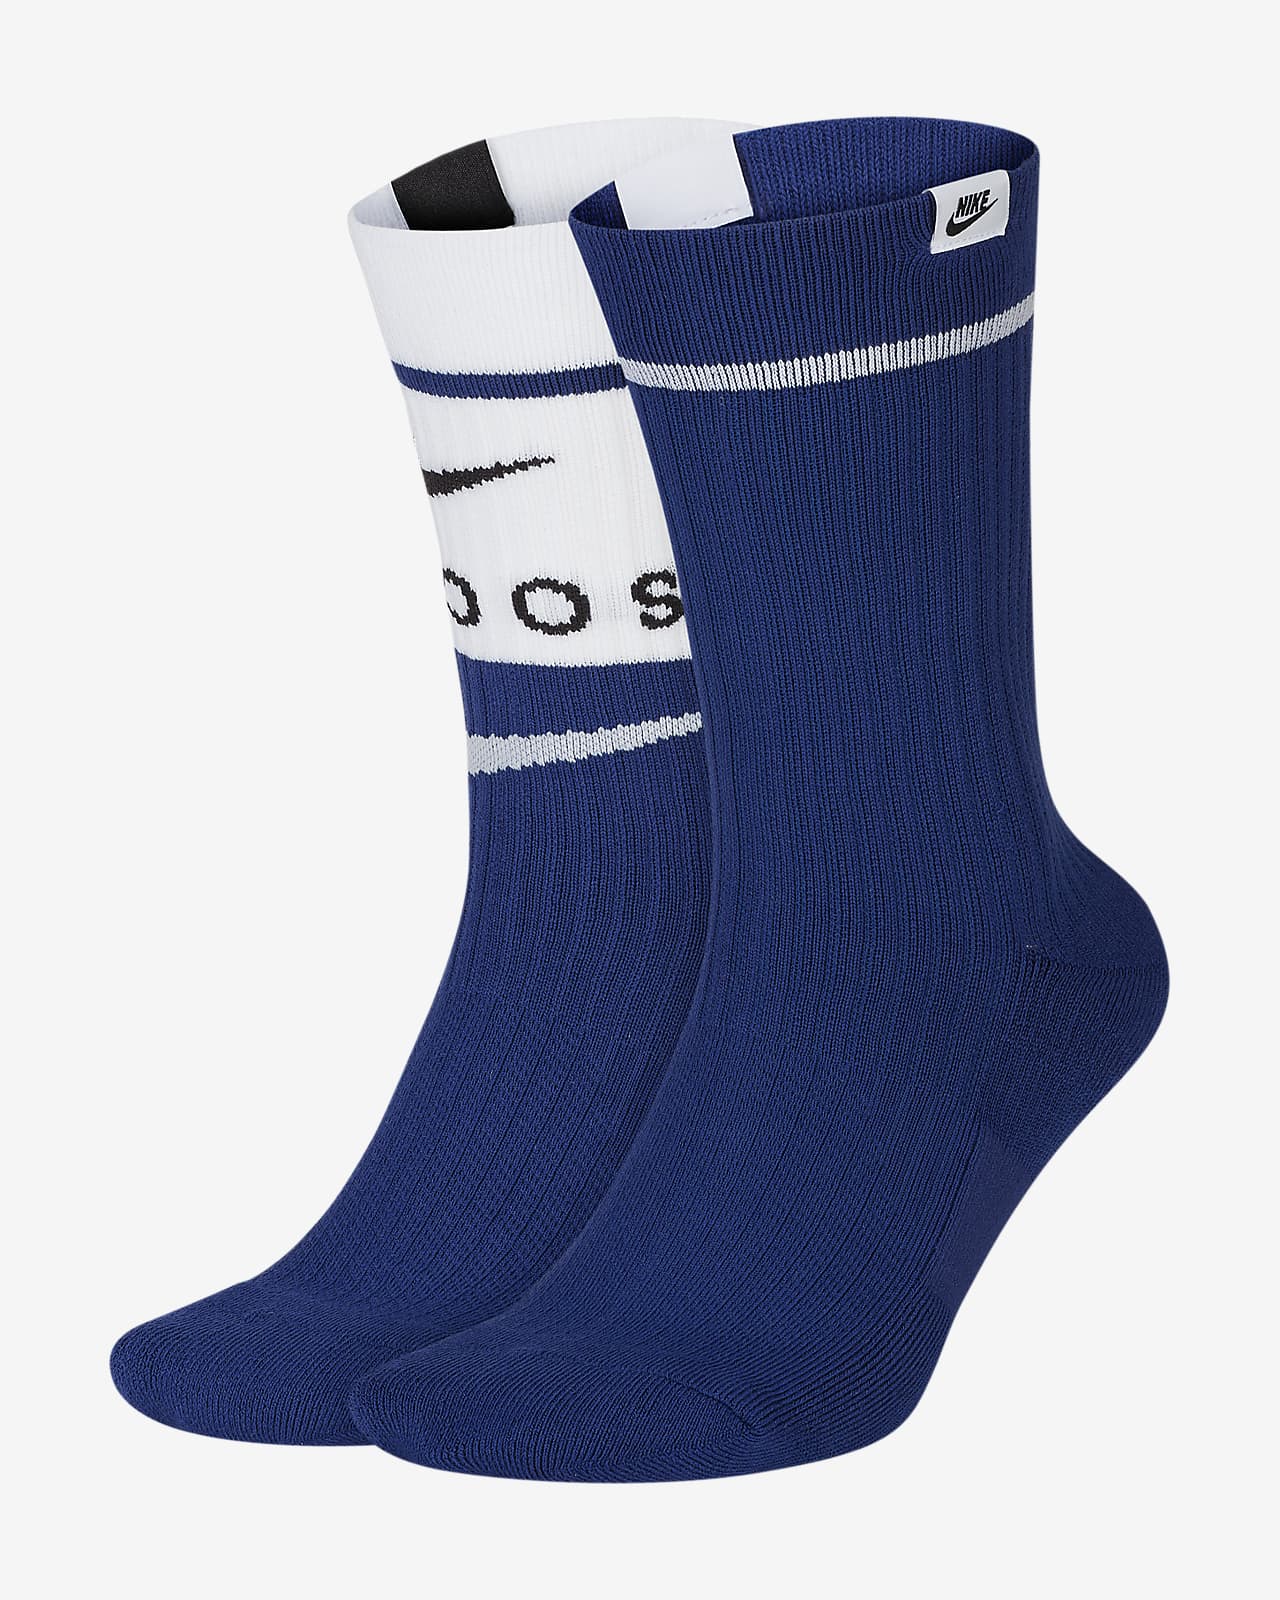 white nike socks with blue swoosh